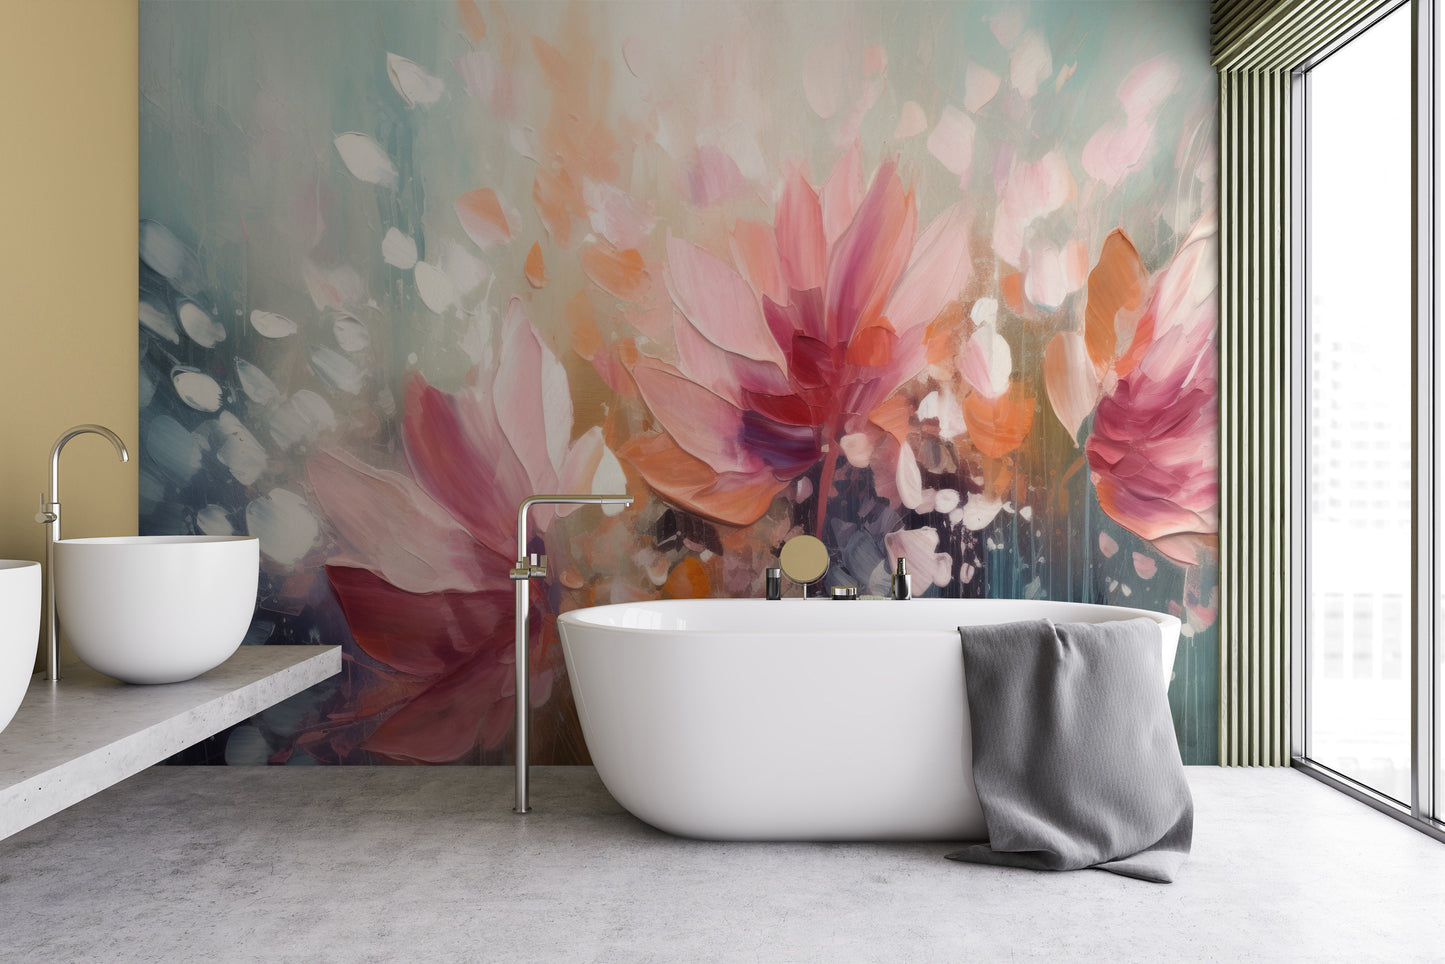 Wzór fototapety artystycznej o nazwie Dreamy Floral Abstraction pokazanej w aranżacji wnętrza.